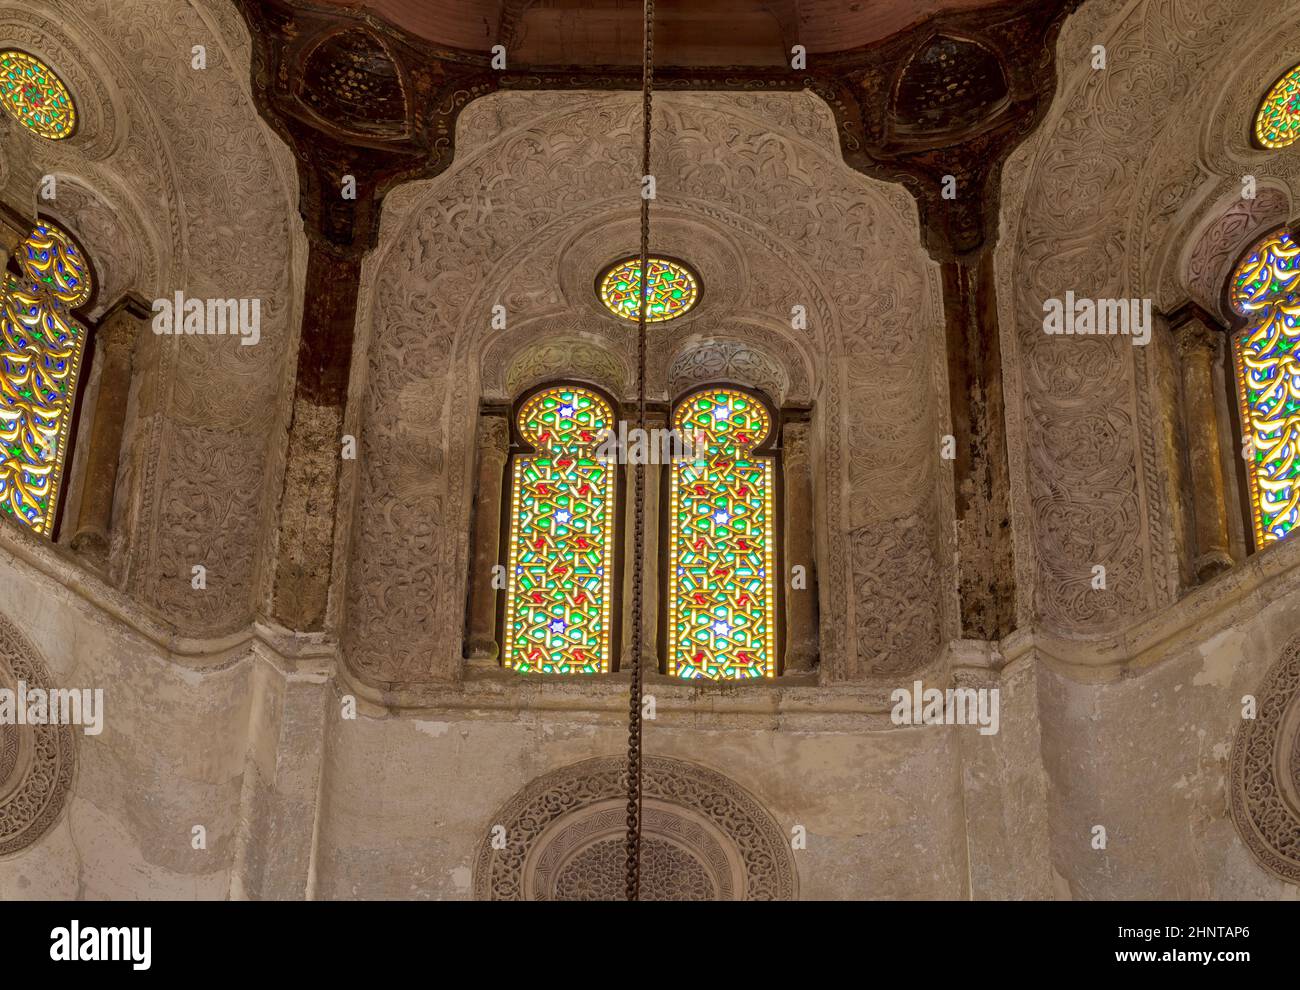 Lucernario con finestre ad arco in stucco traforato decorate con vetrate colorate, presso il complesso Qalawun, Cairo, Egitto Foto Stock